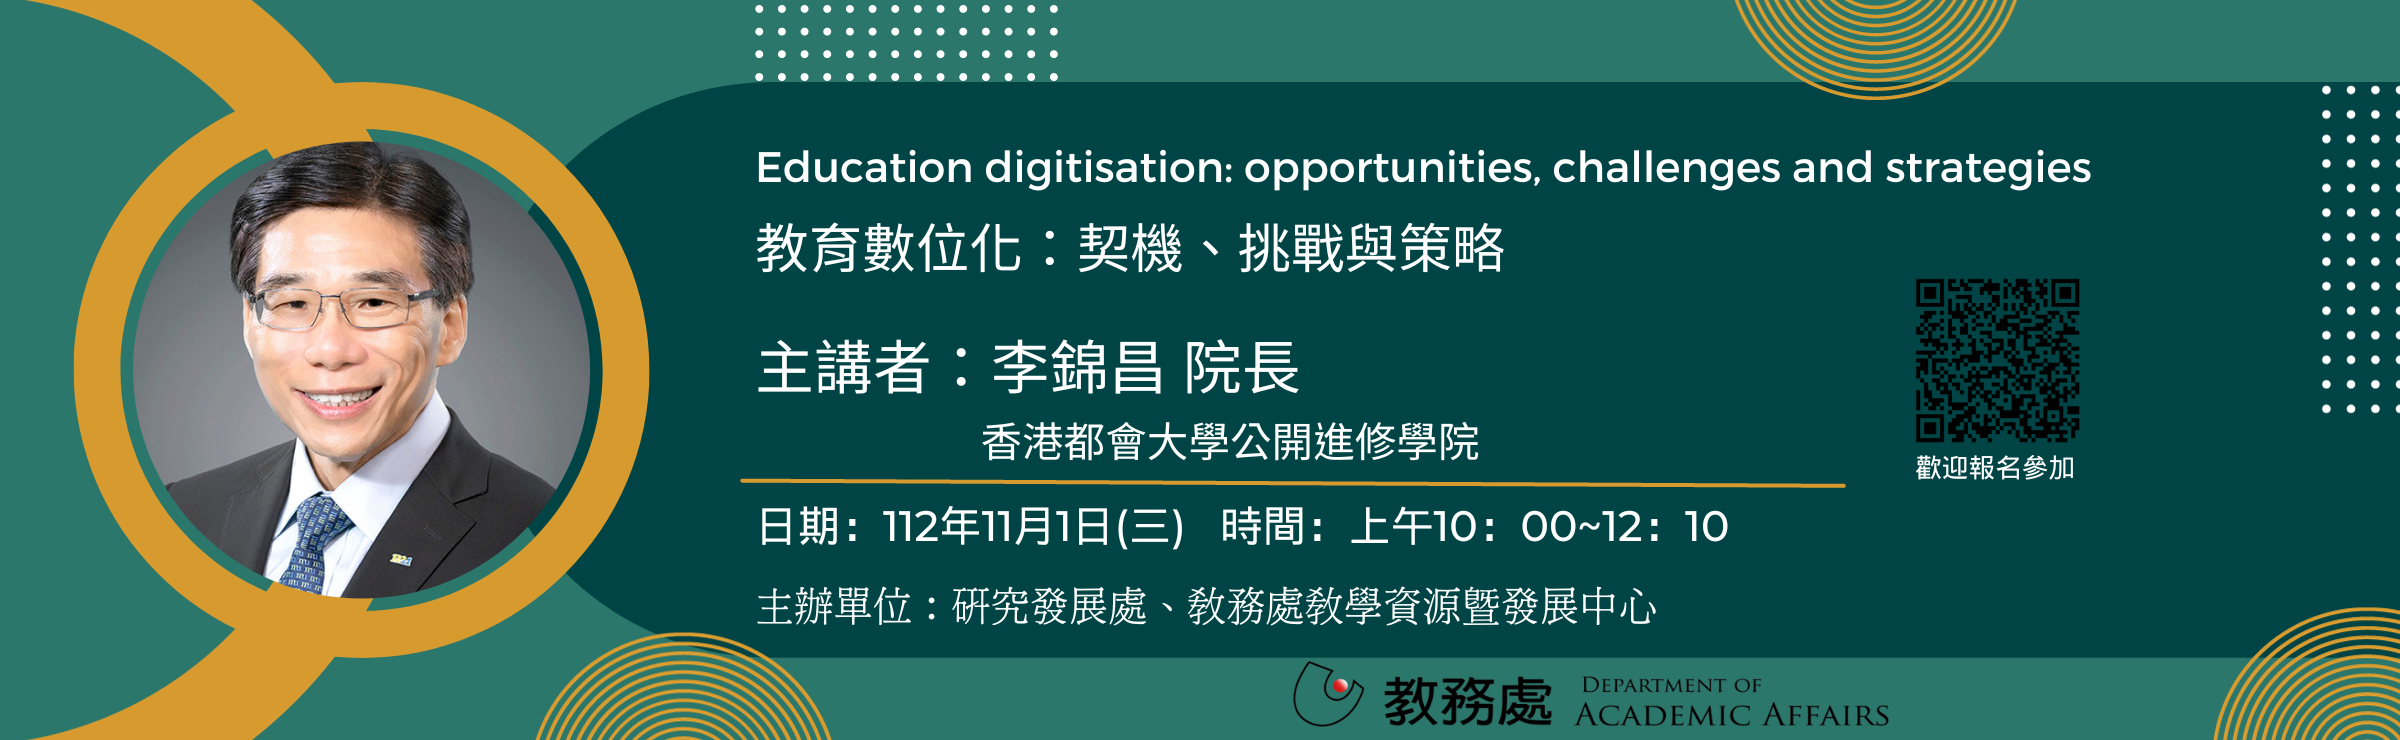 1121101「教育數位化：契機、挑戰與策略」講座